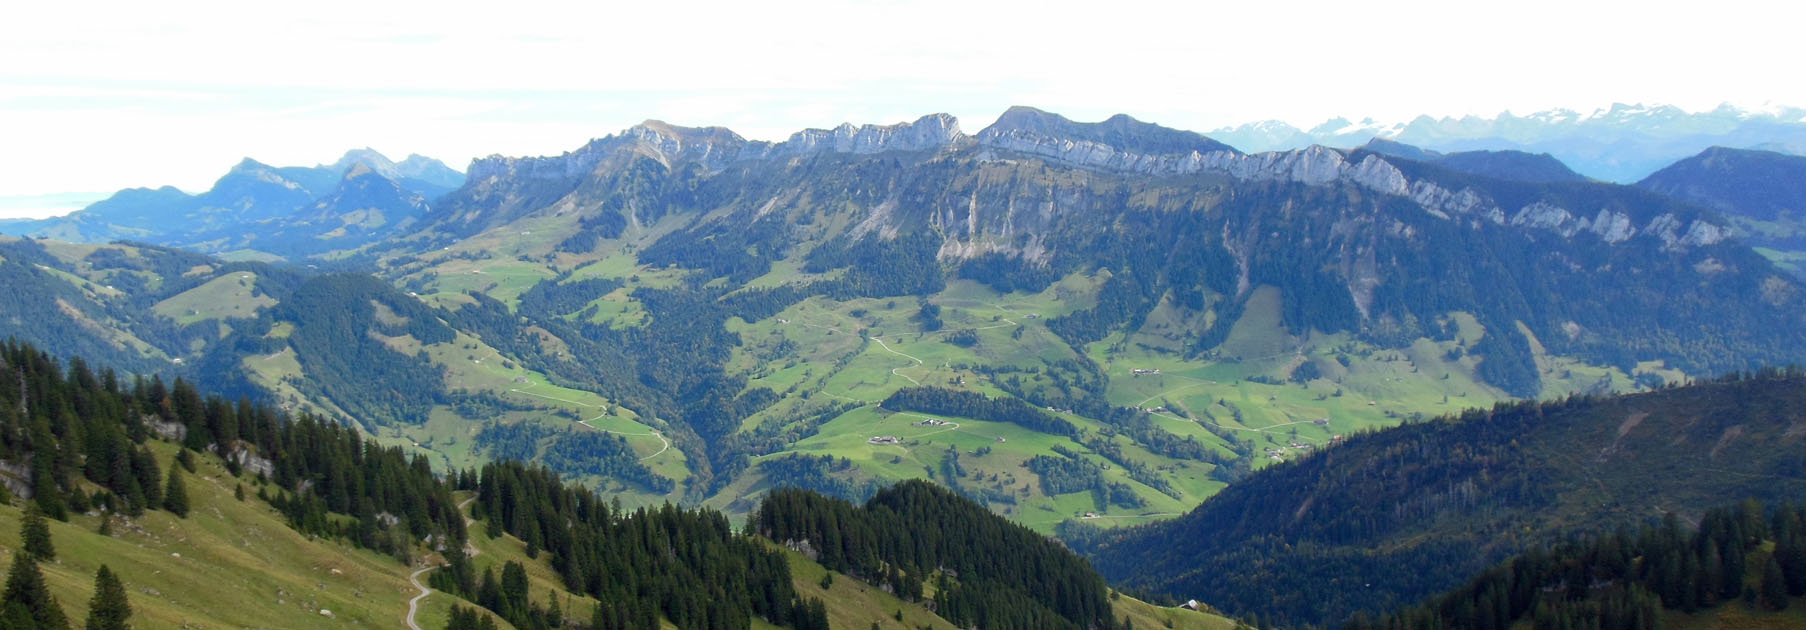 RevierJagd Luzern Berg Panorama